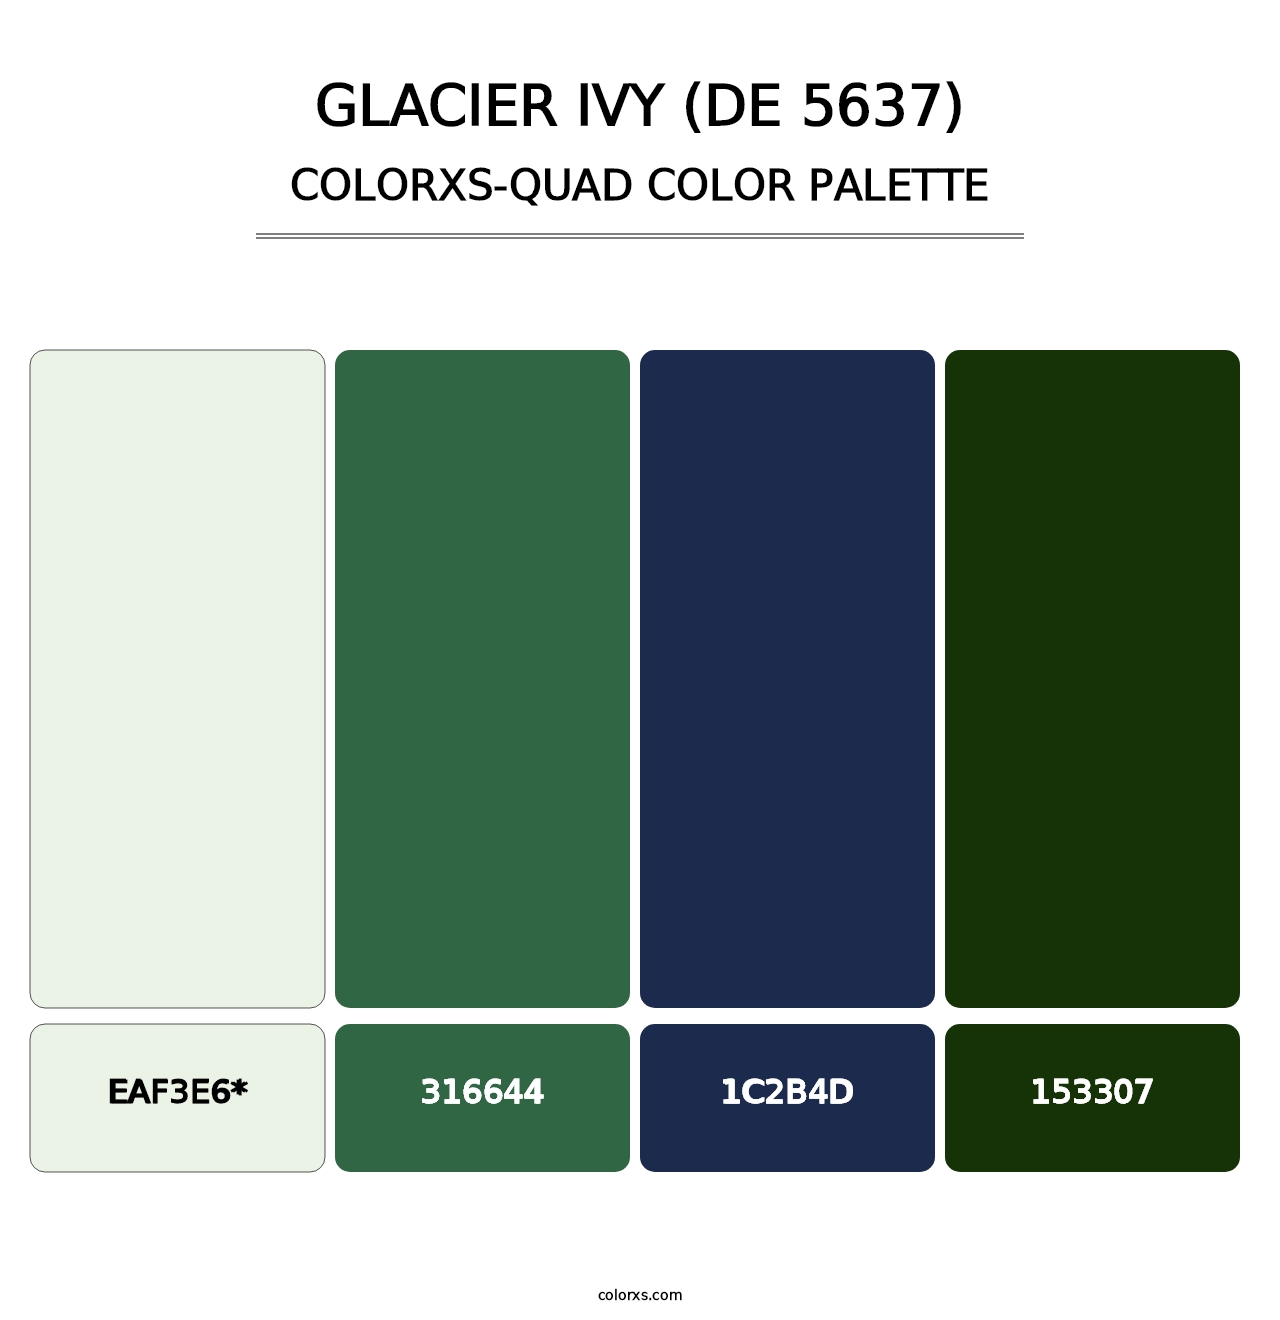 Glacier Ivy (DE 5637) - Colorxs Quad Palette